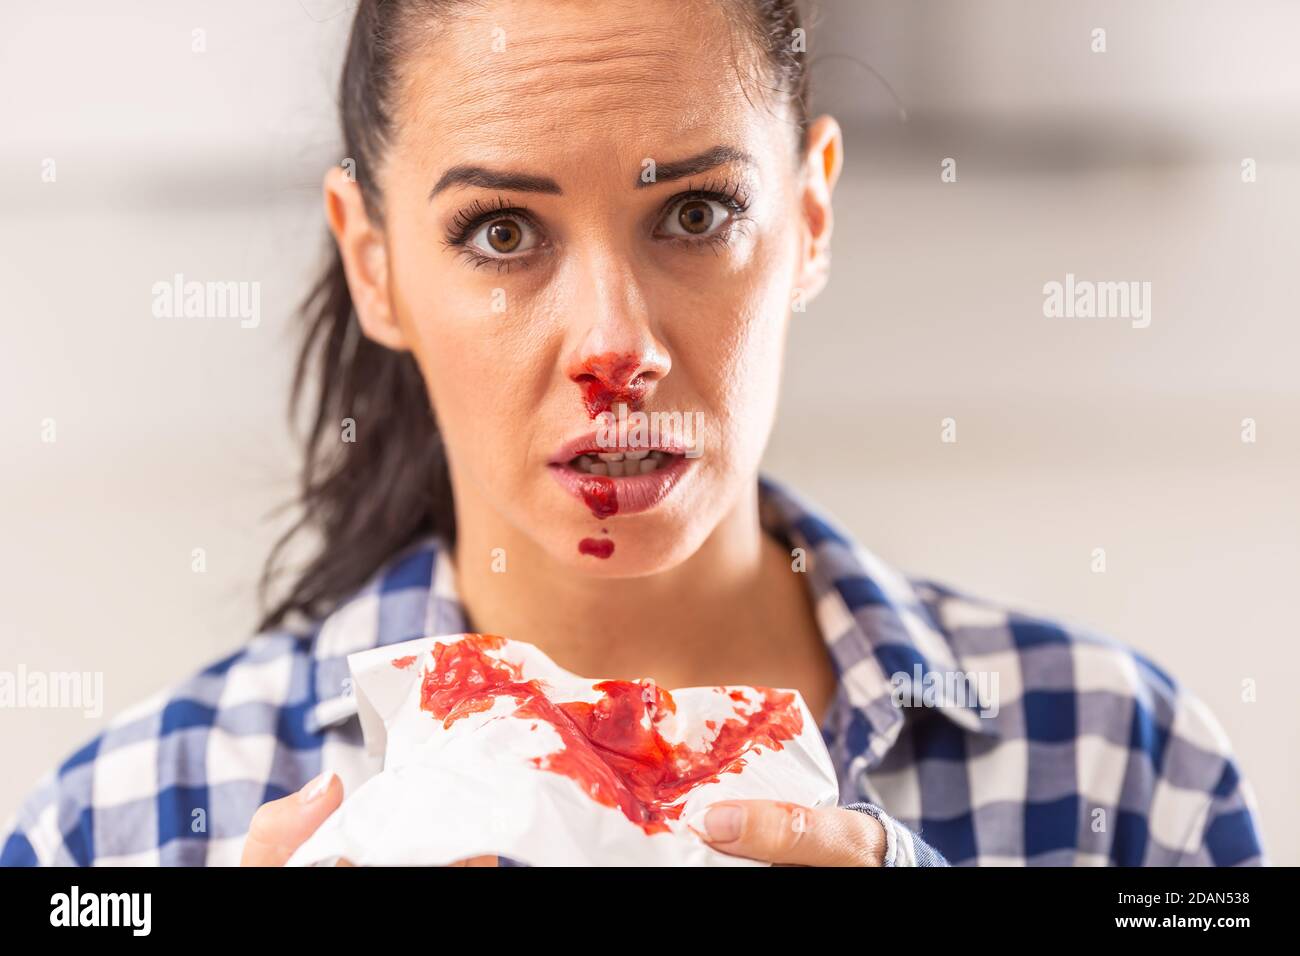 Sangue dal naso immagini e fotografie stock ad alta risoluzione - Alamy